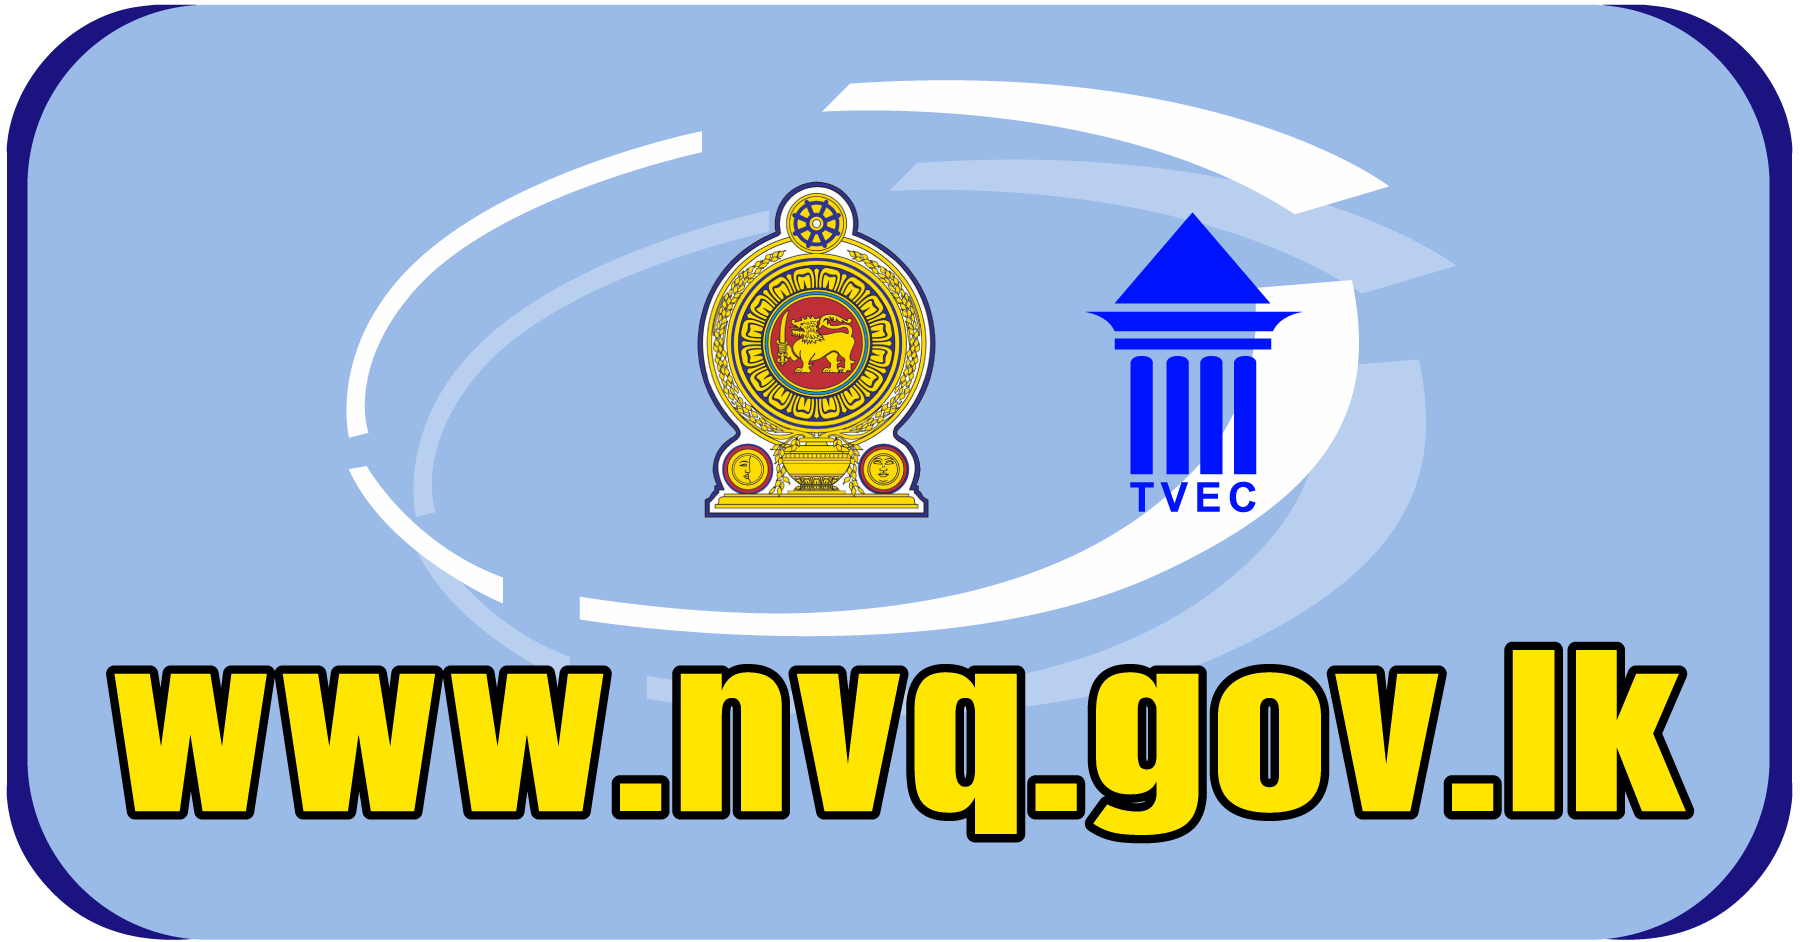 NVQ Website link